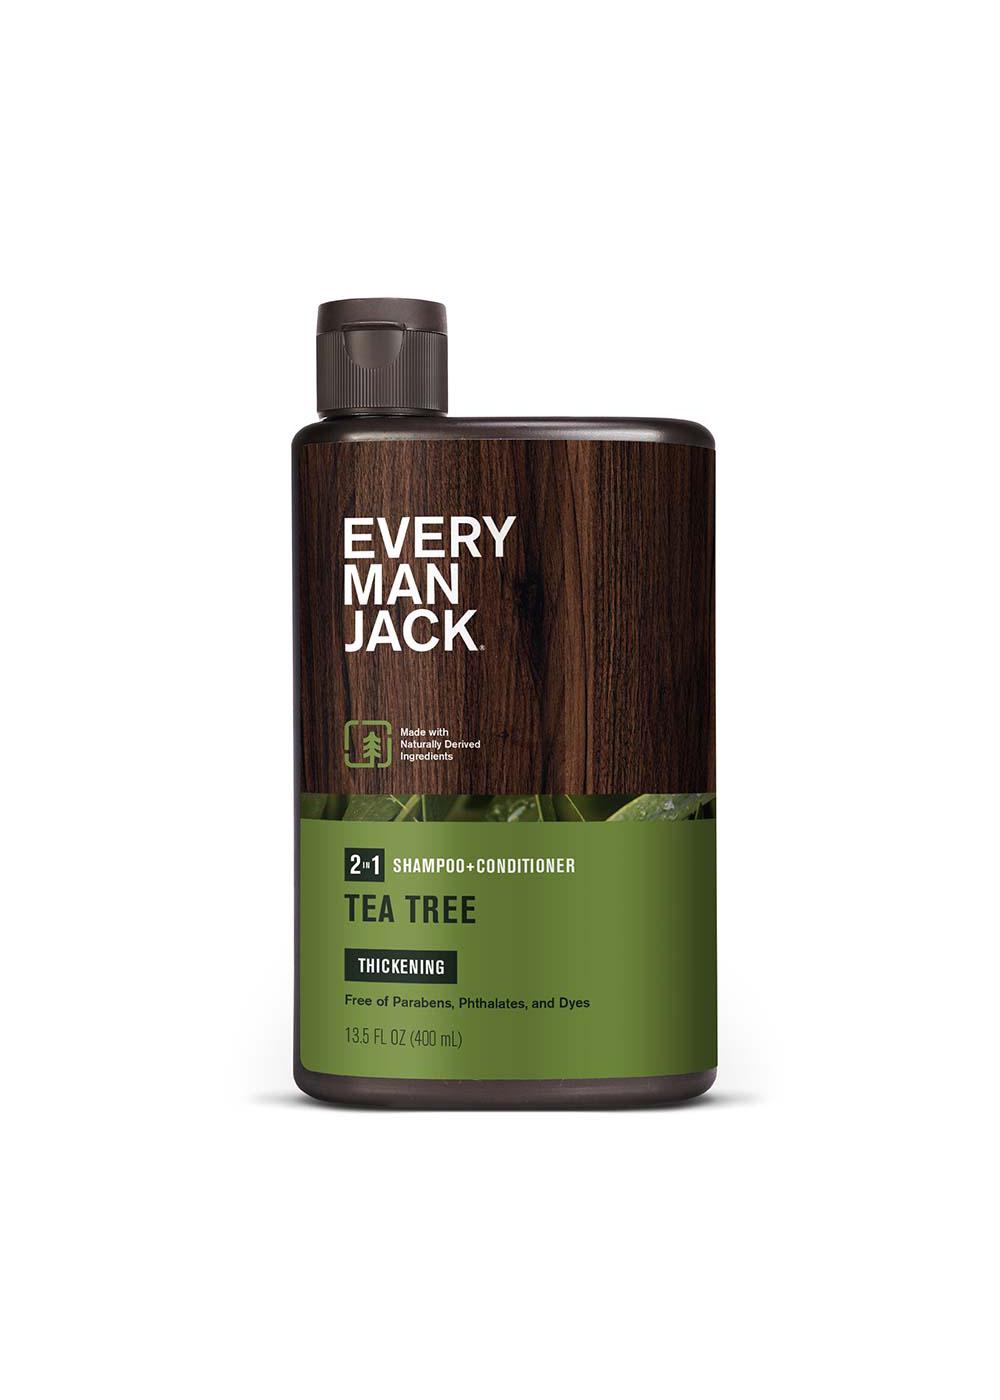 Every Jack Shampoo + Conditioner - Tea Tree - Shop Shampoo & Conditioner H-E-B